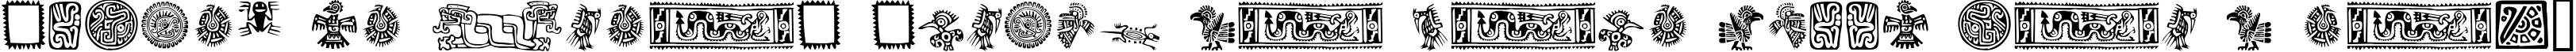 Пример написания шрифтом Mexican Ornaments текста на французском